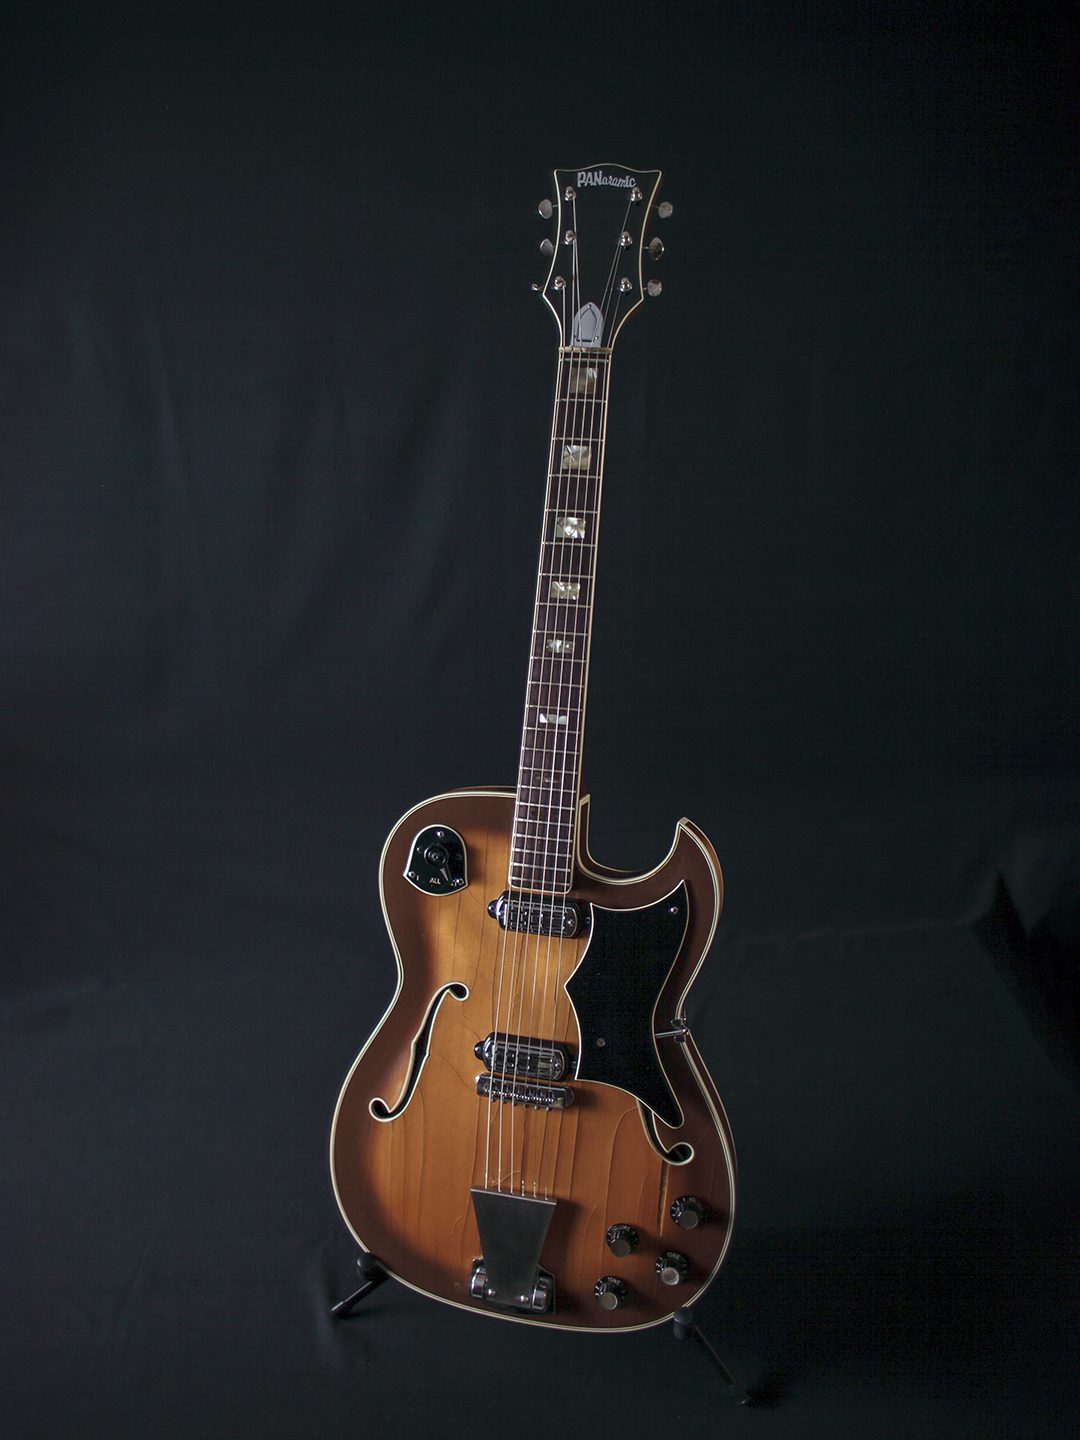 1961 Panoramic Electric Guitar